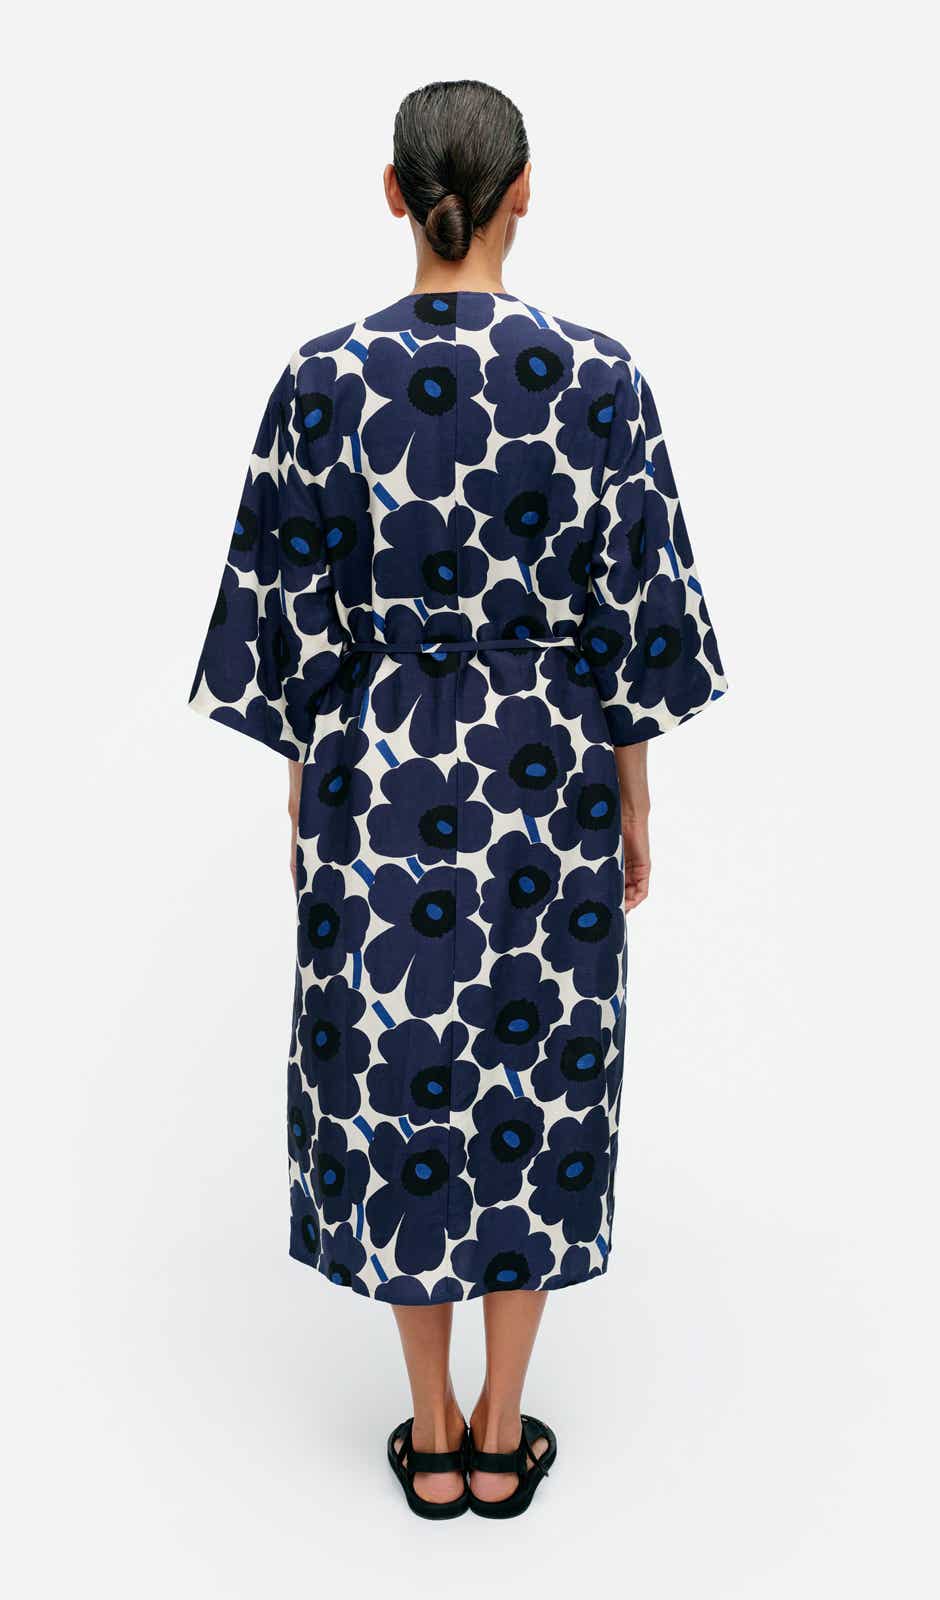  Markkinat Unikko dress – cupro and linen blend